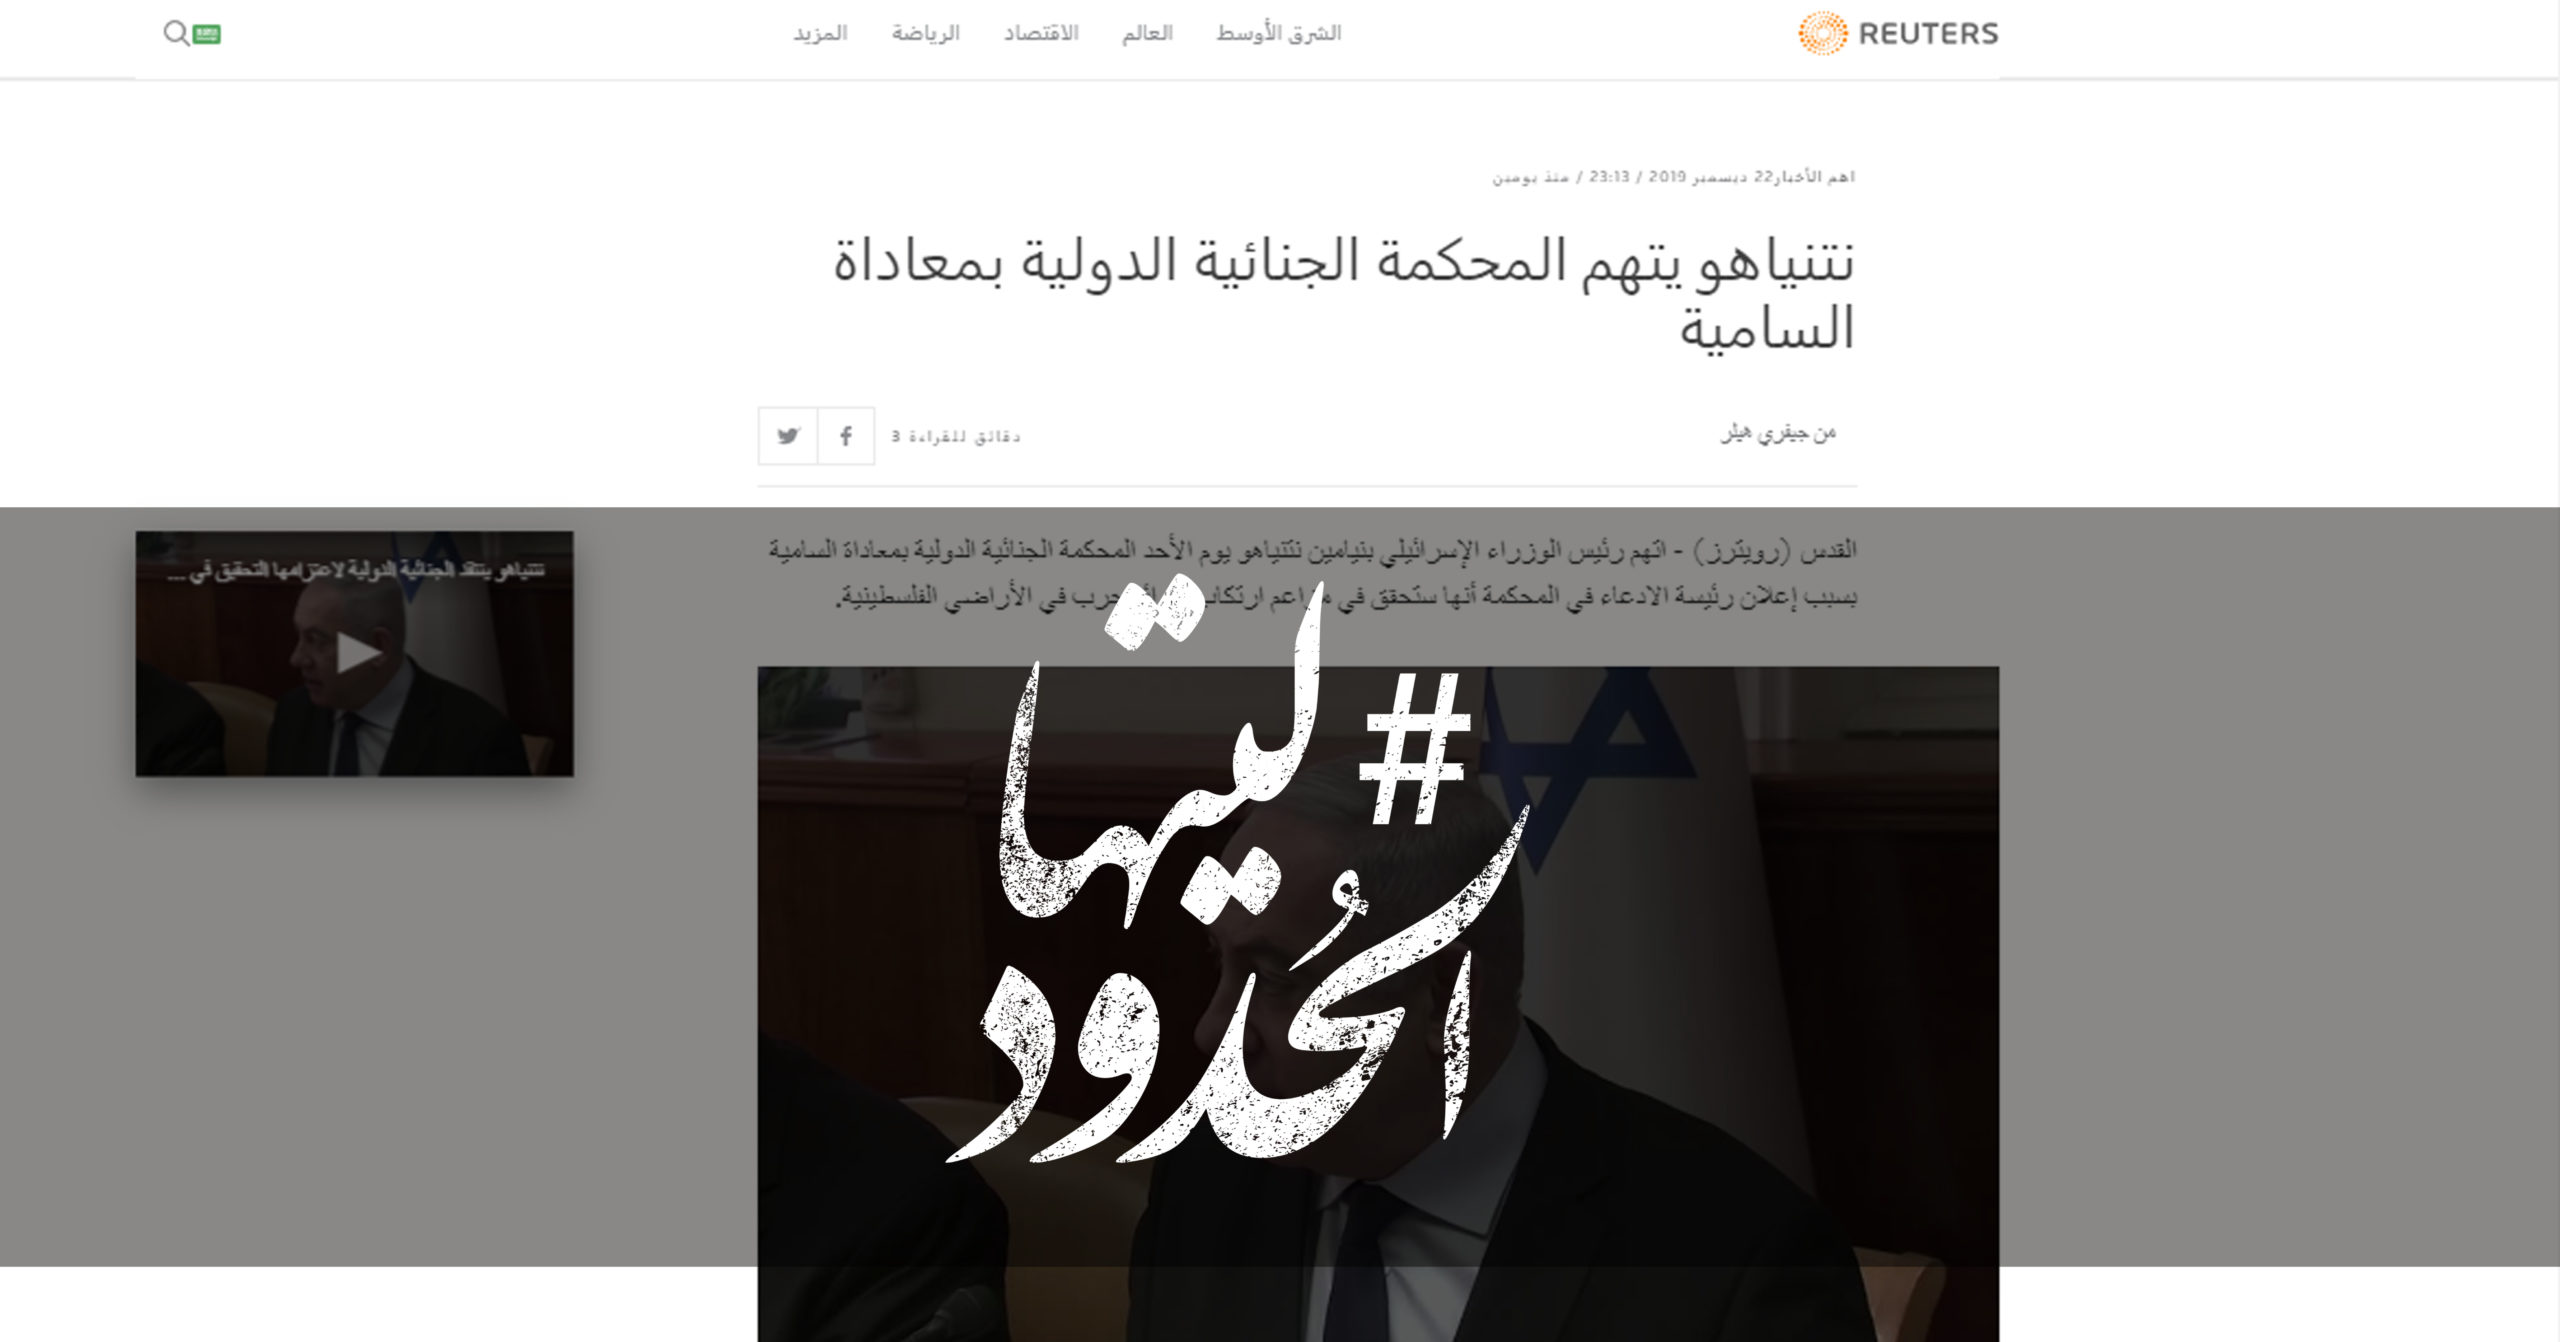 صورة نتنياهو يتهم المحكمة الجنائية الدولية بمعاداة السامية